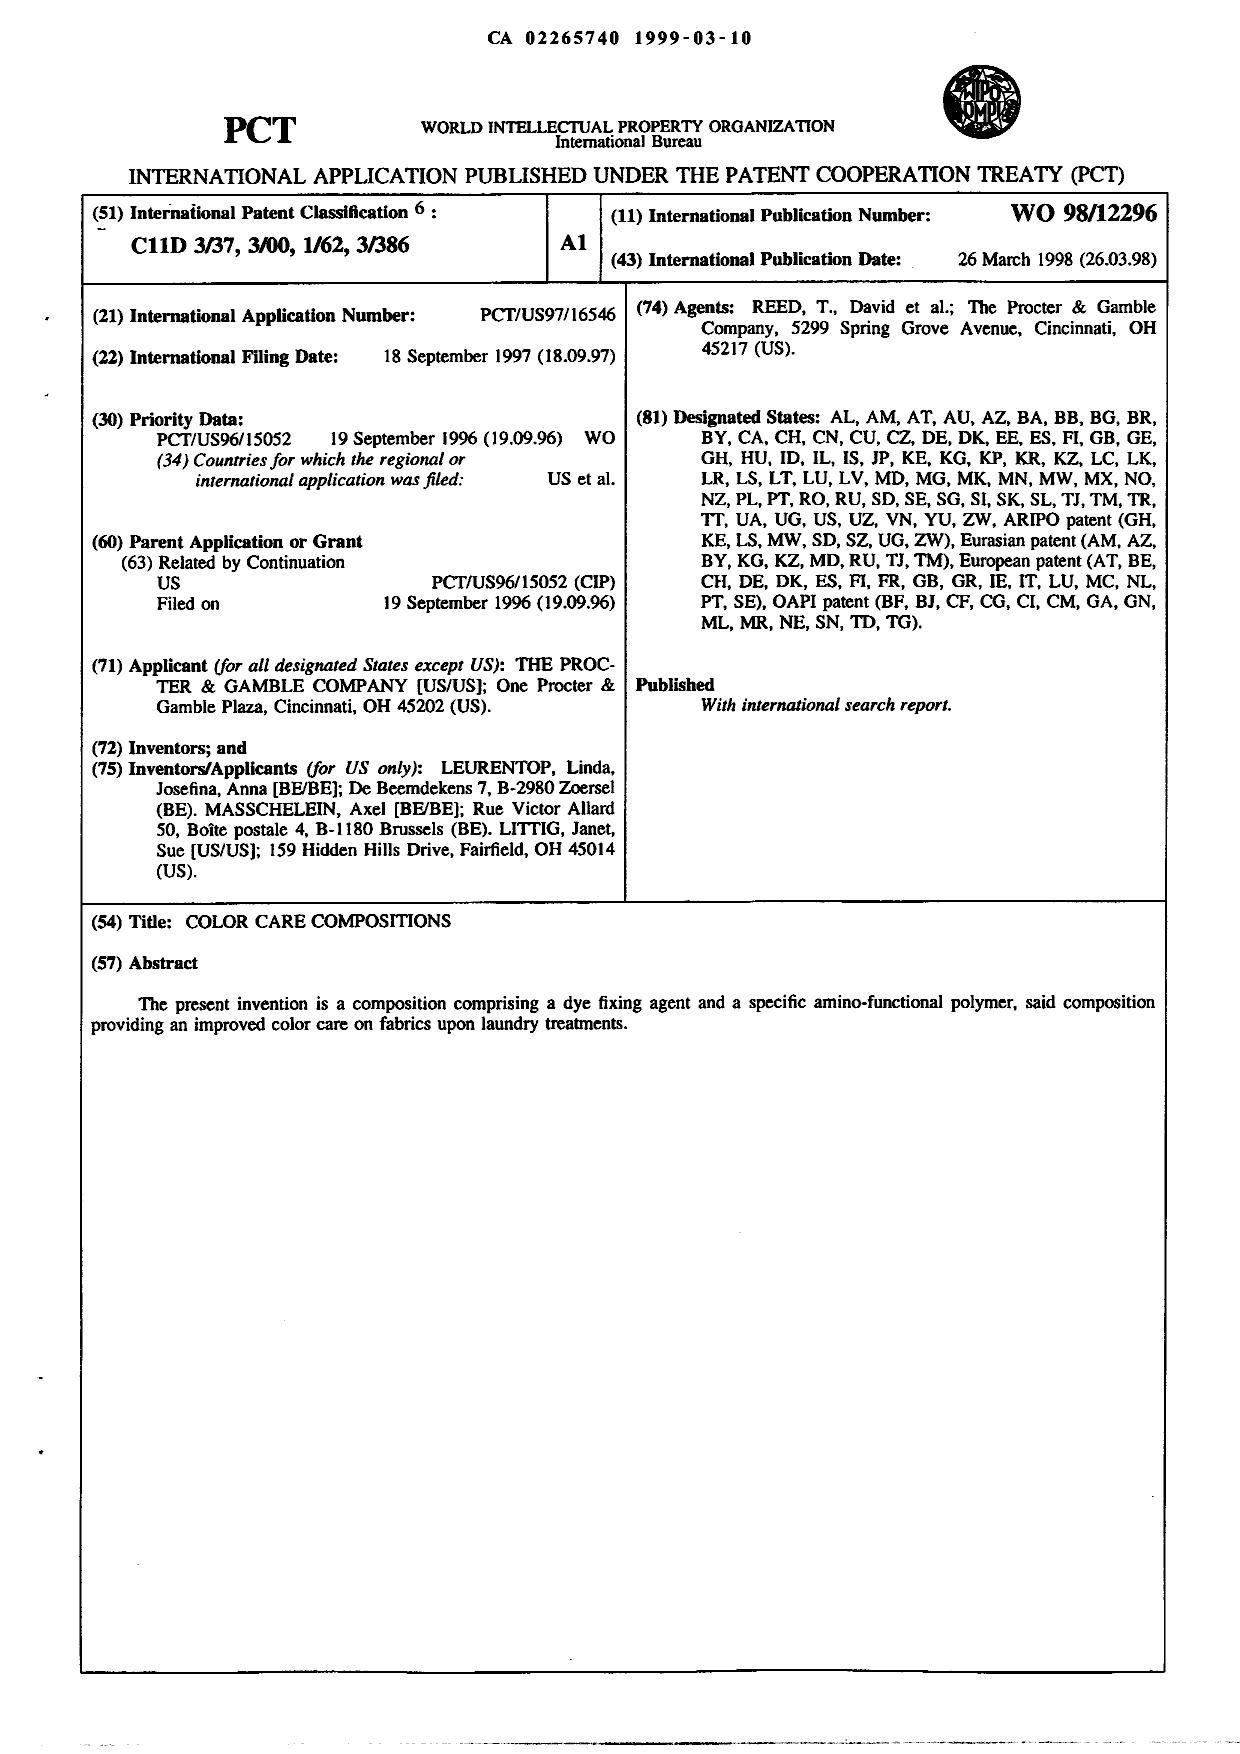 Document de brevet canadien 2265740. Abrégé 19990310. Image 1 de 1